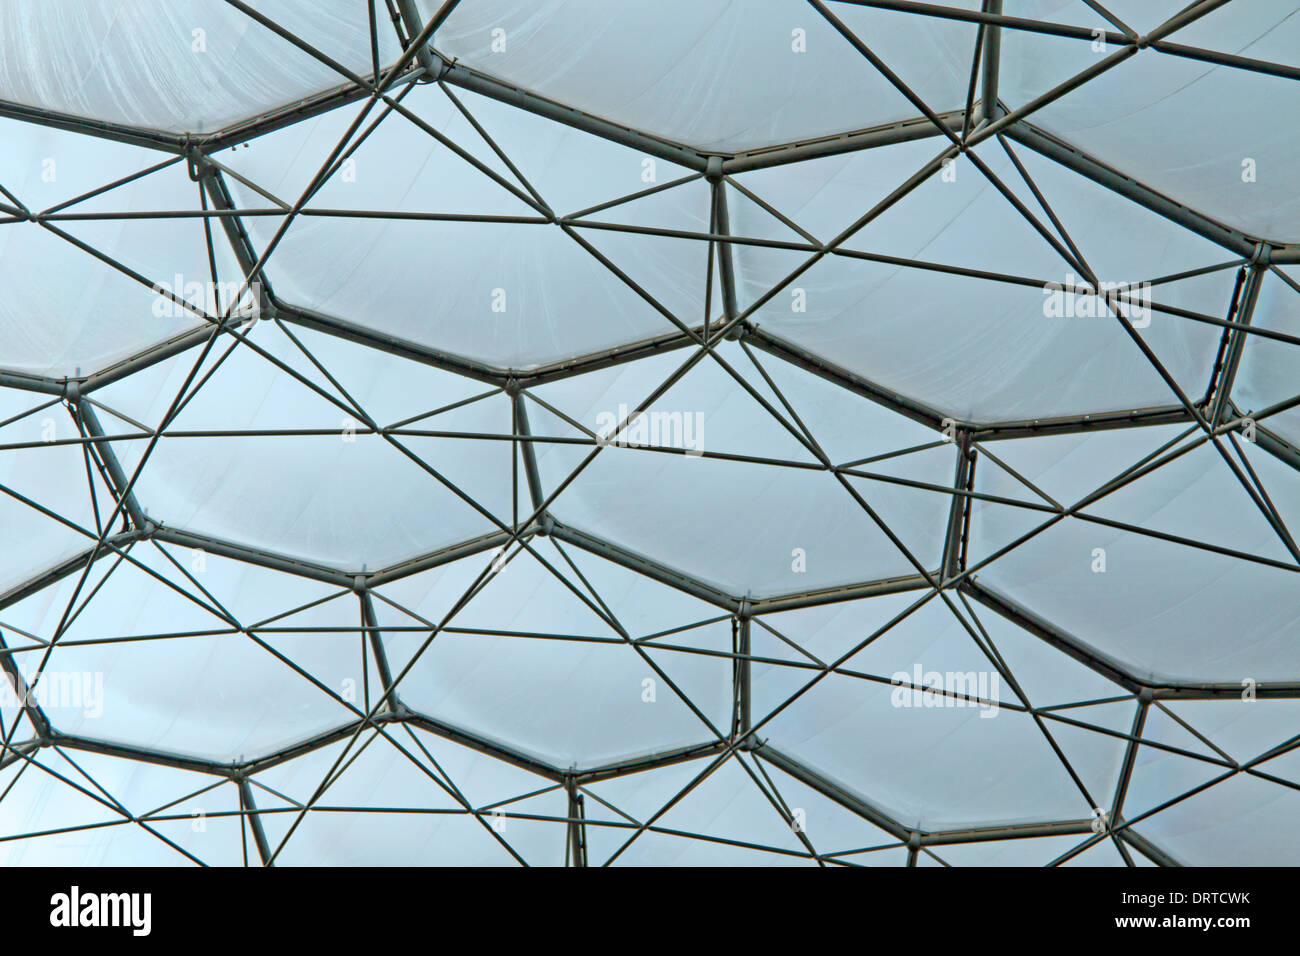 Tetto di un Eden Project biome: Il hexangle e struttura pentagonale guardando dall'interno. Foto Stock